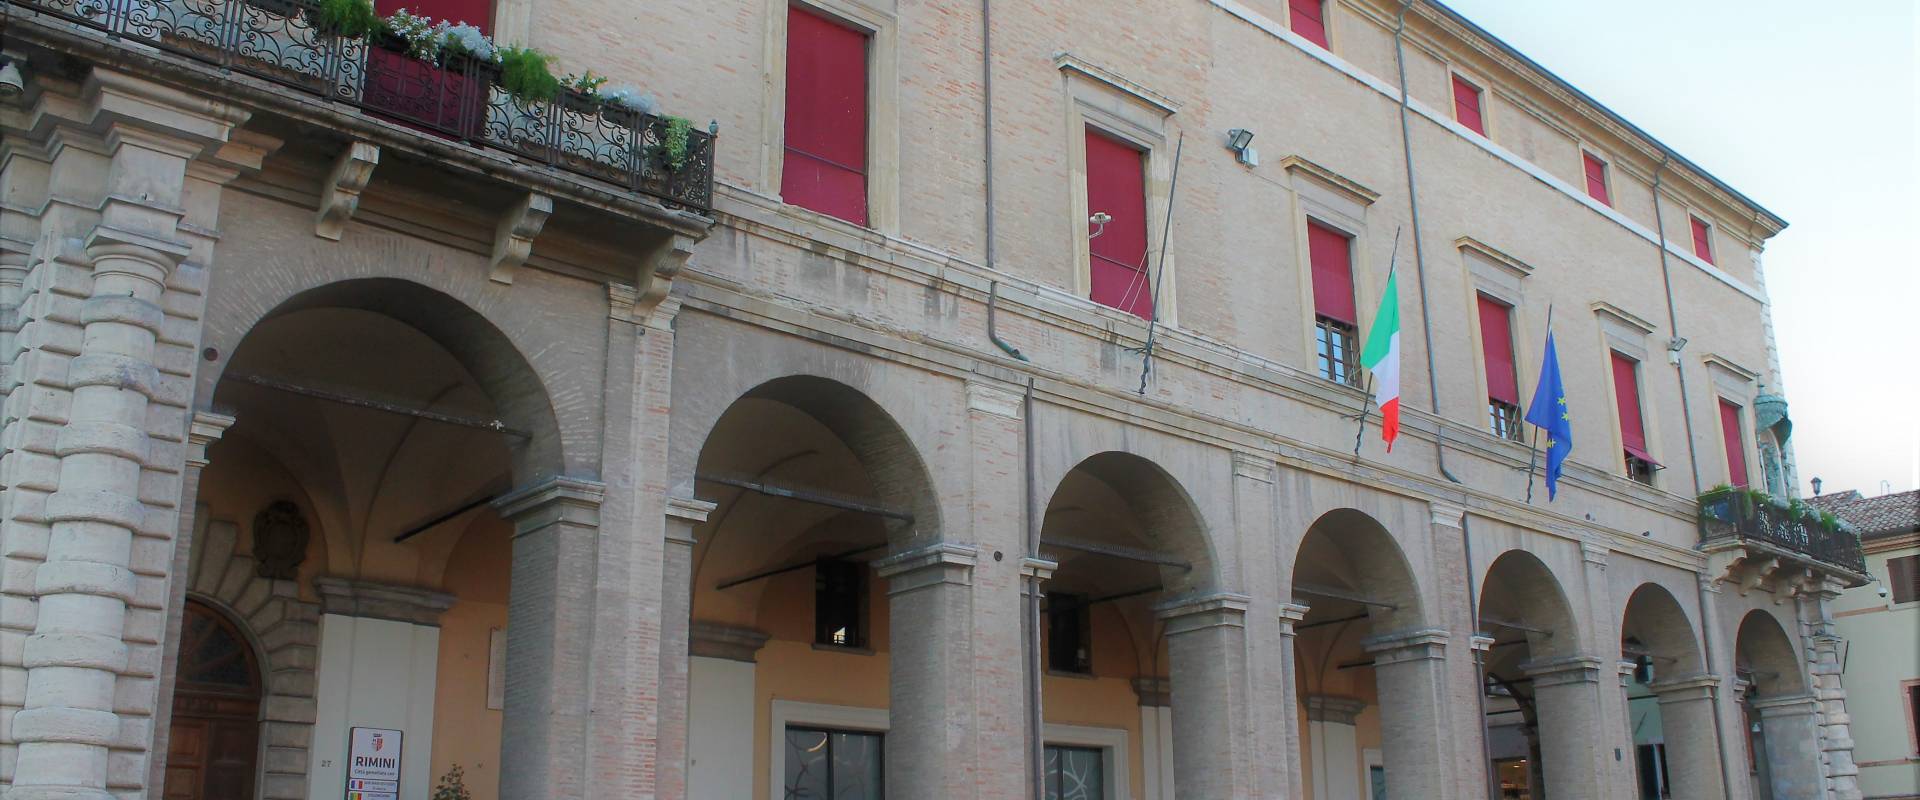 Palazzo Garampi a Rimini foto di Thomass1995